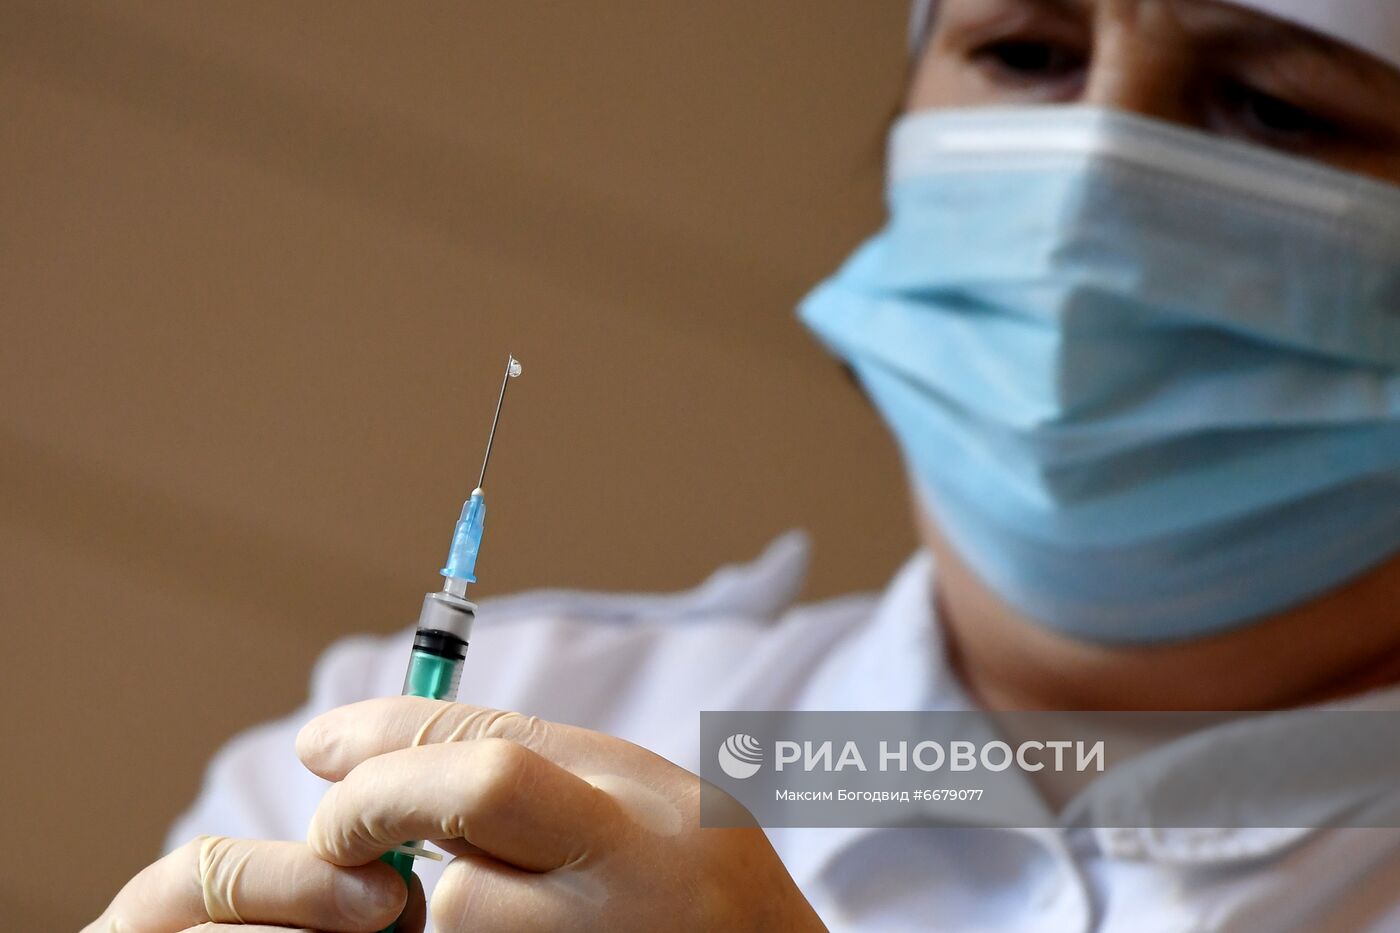 Вакцинация от Covid-19 в Казани